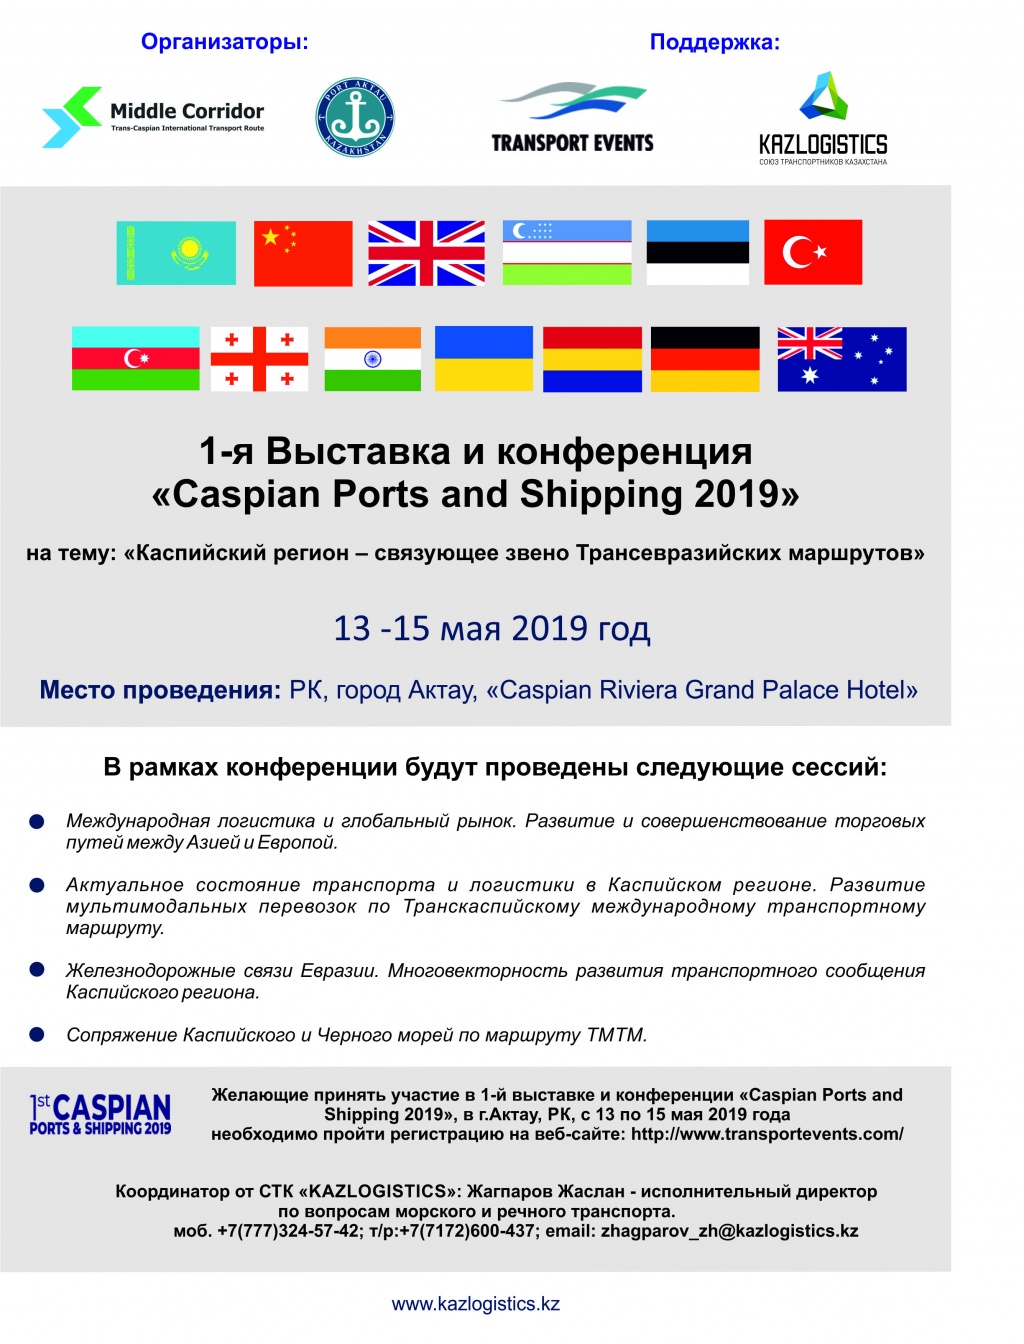 Выставка и конференция "Caspian Ports and Shipping 2019